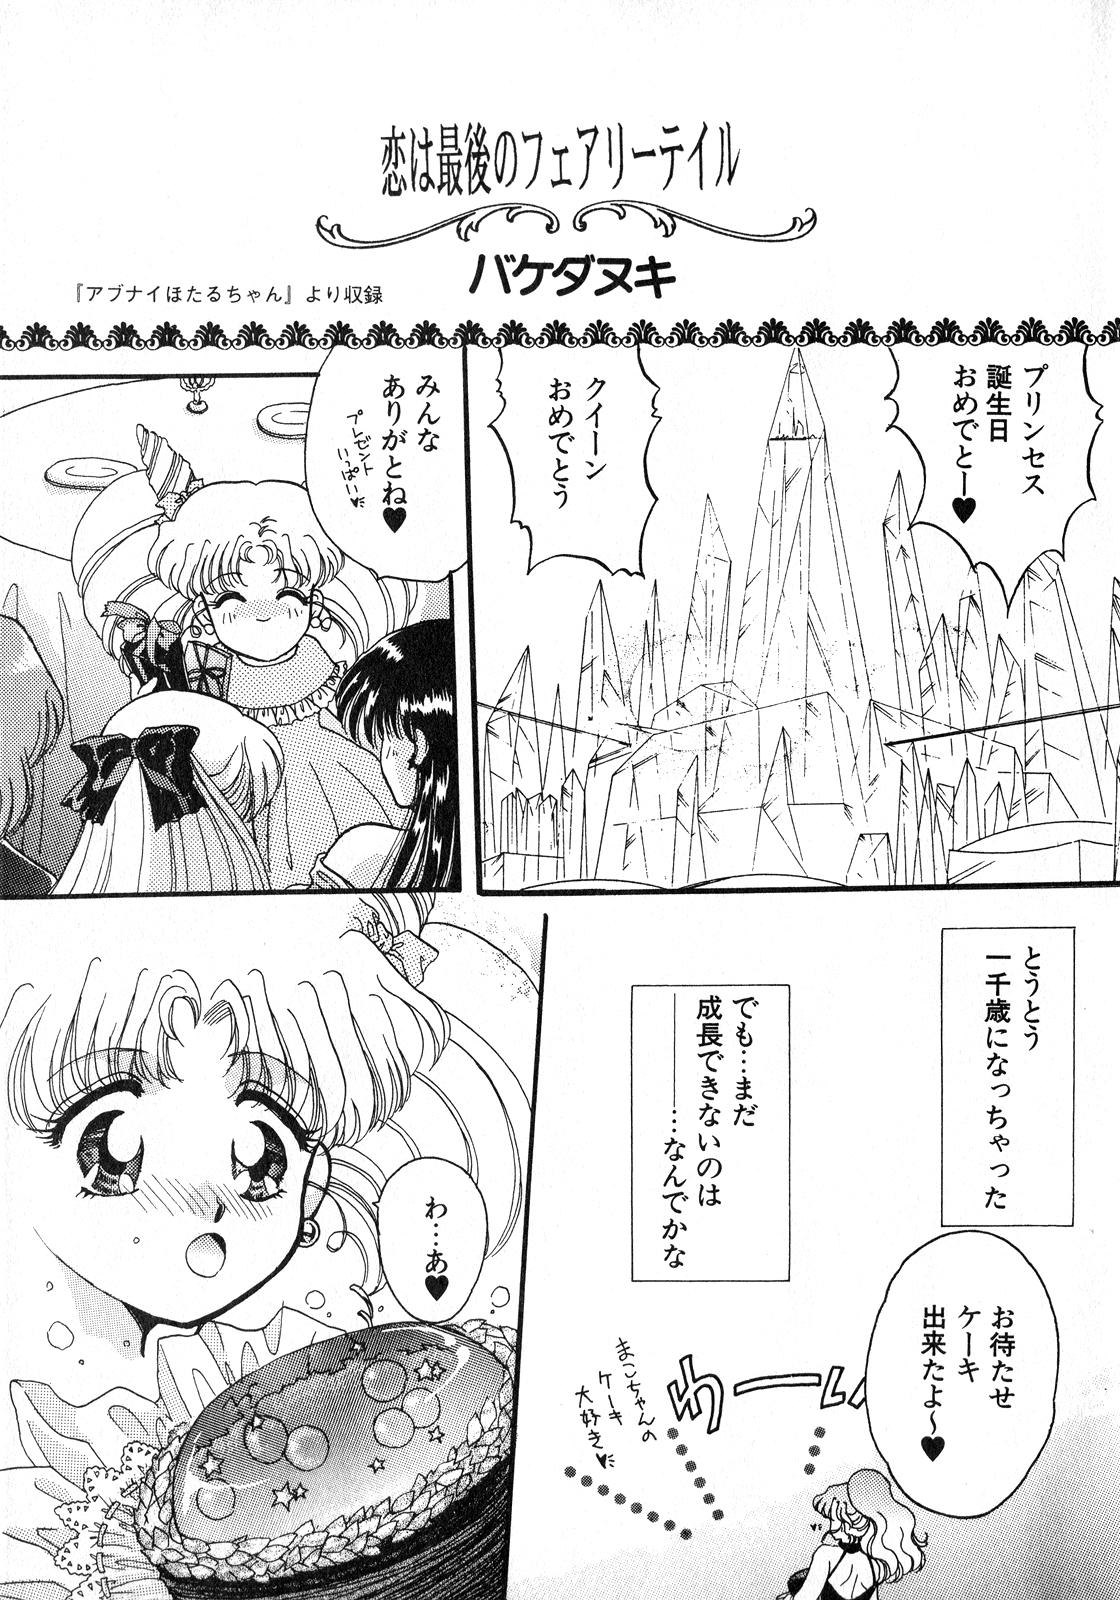 Butt Plug Lunatic Party 8 - Sailor moon Voyeur - Page 4